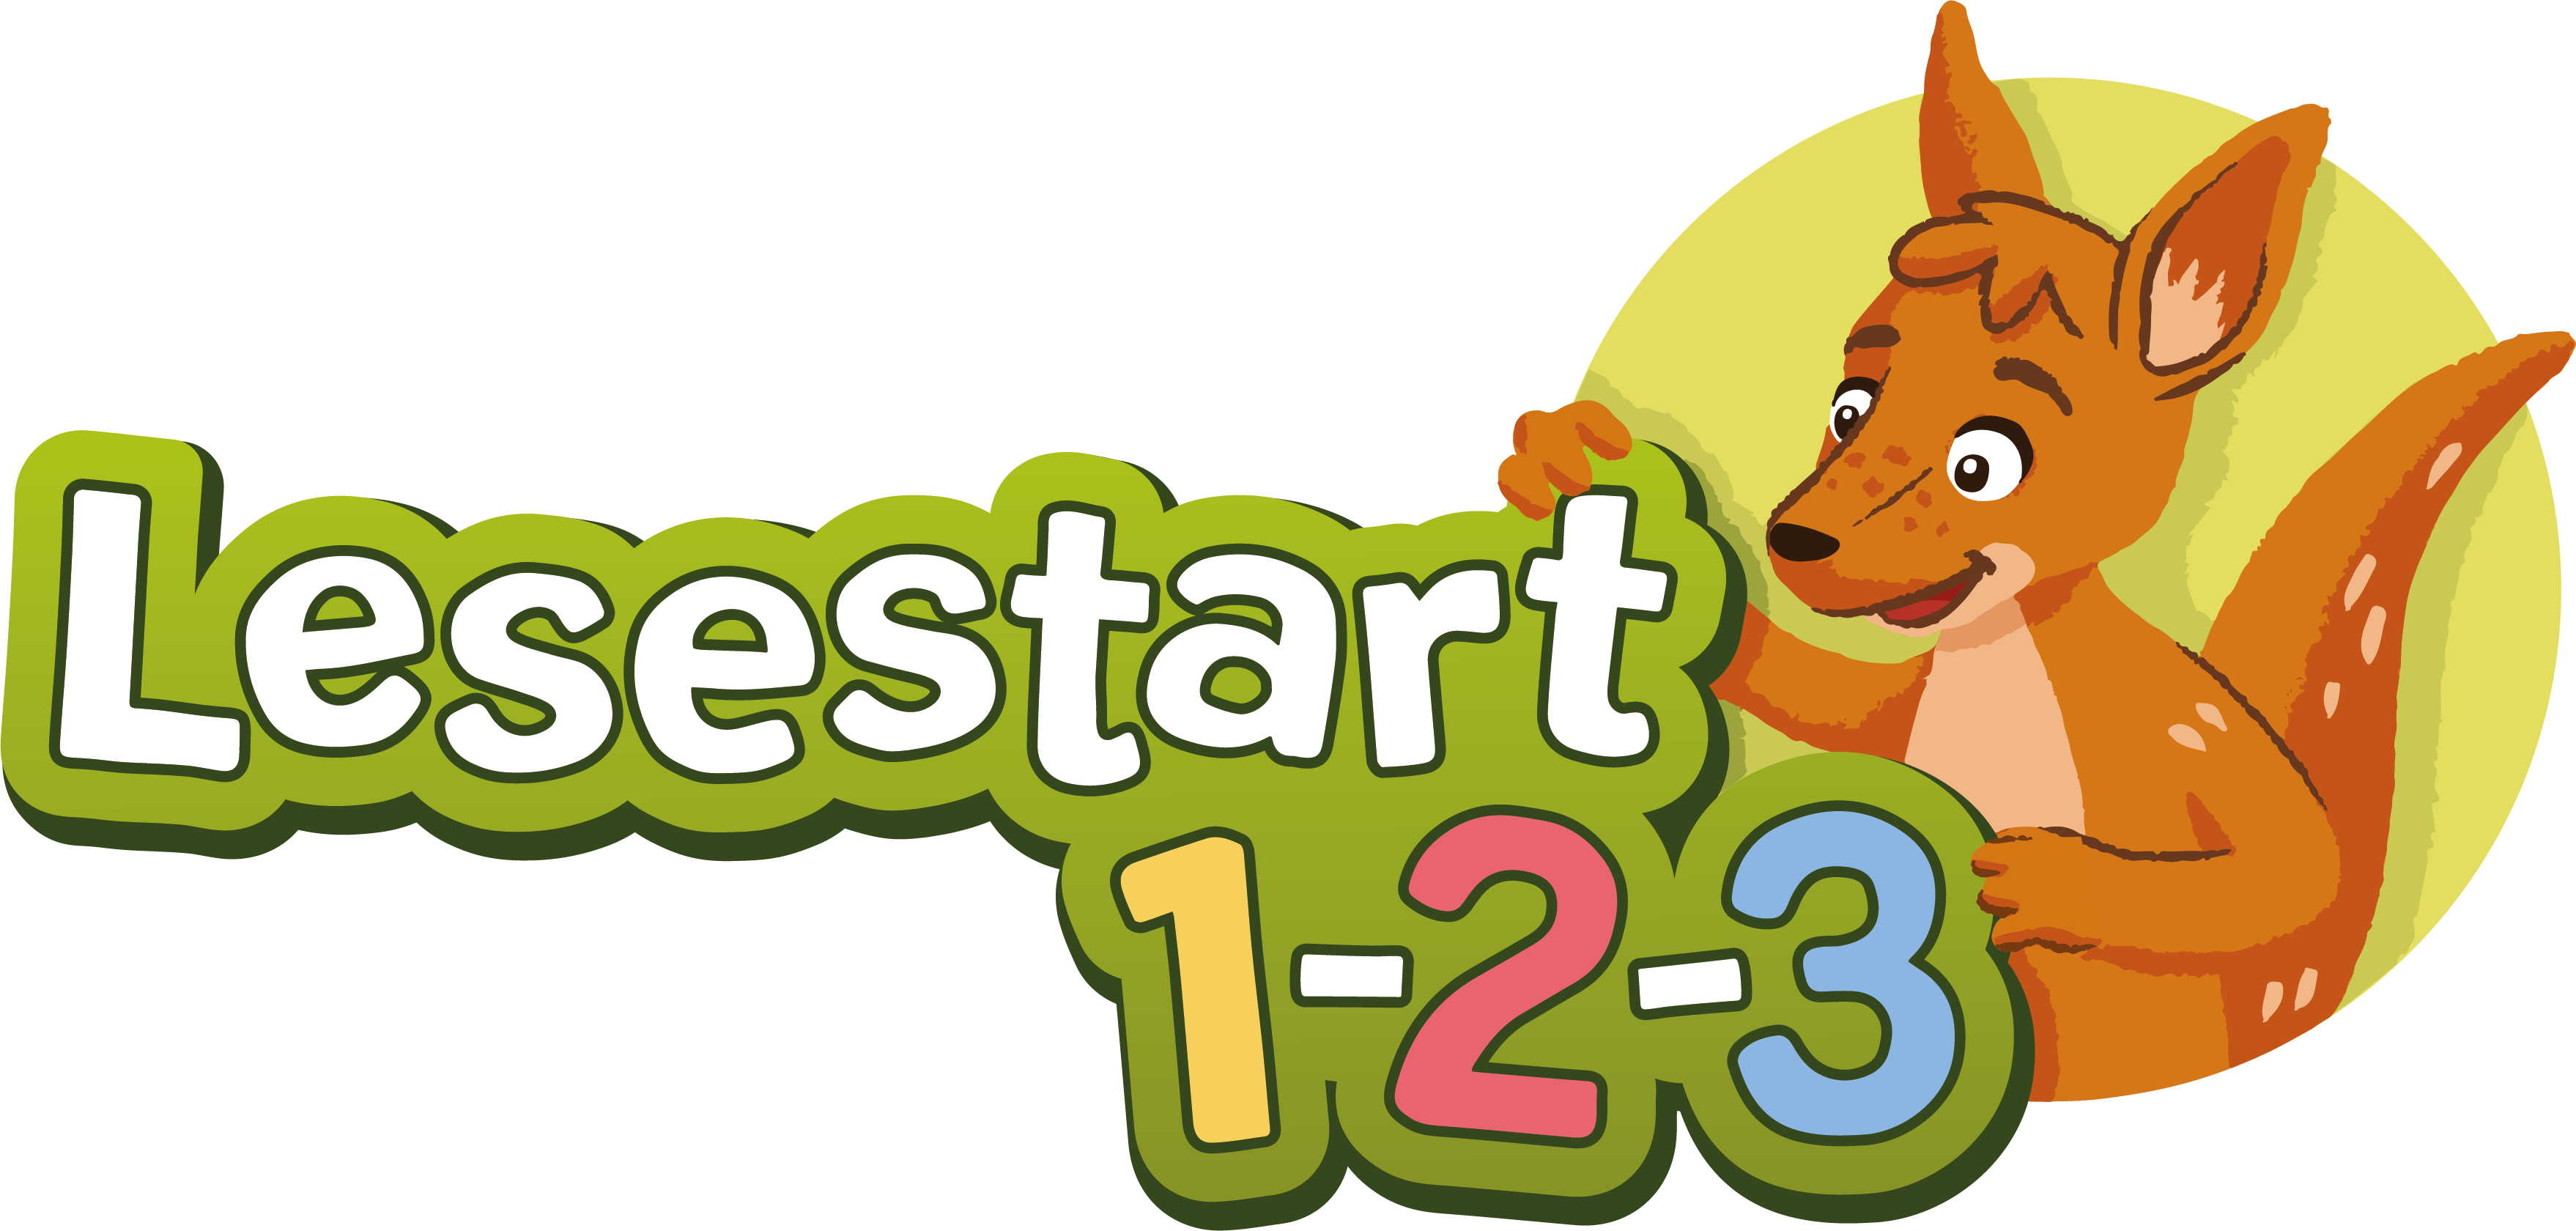 lesestart123 logo